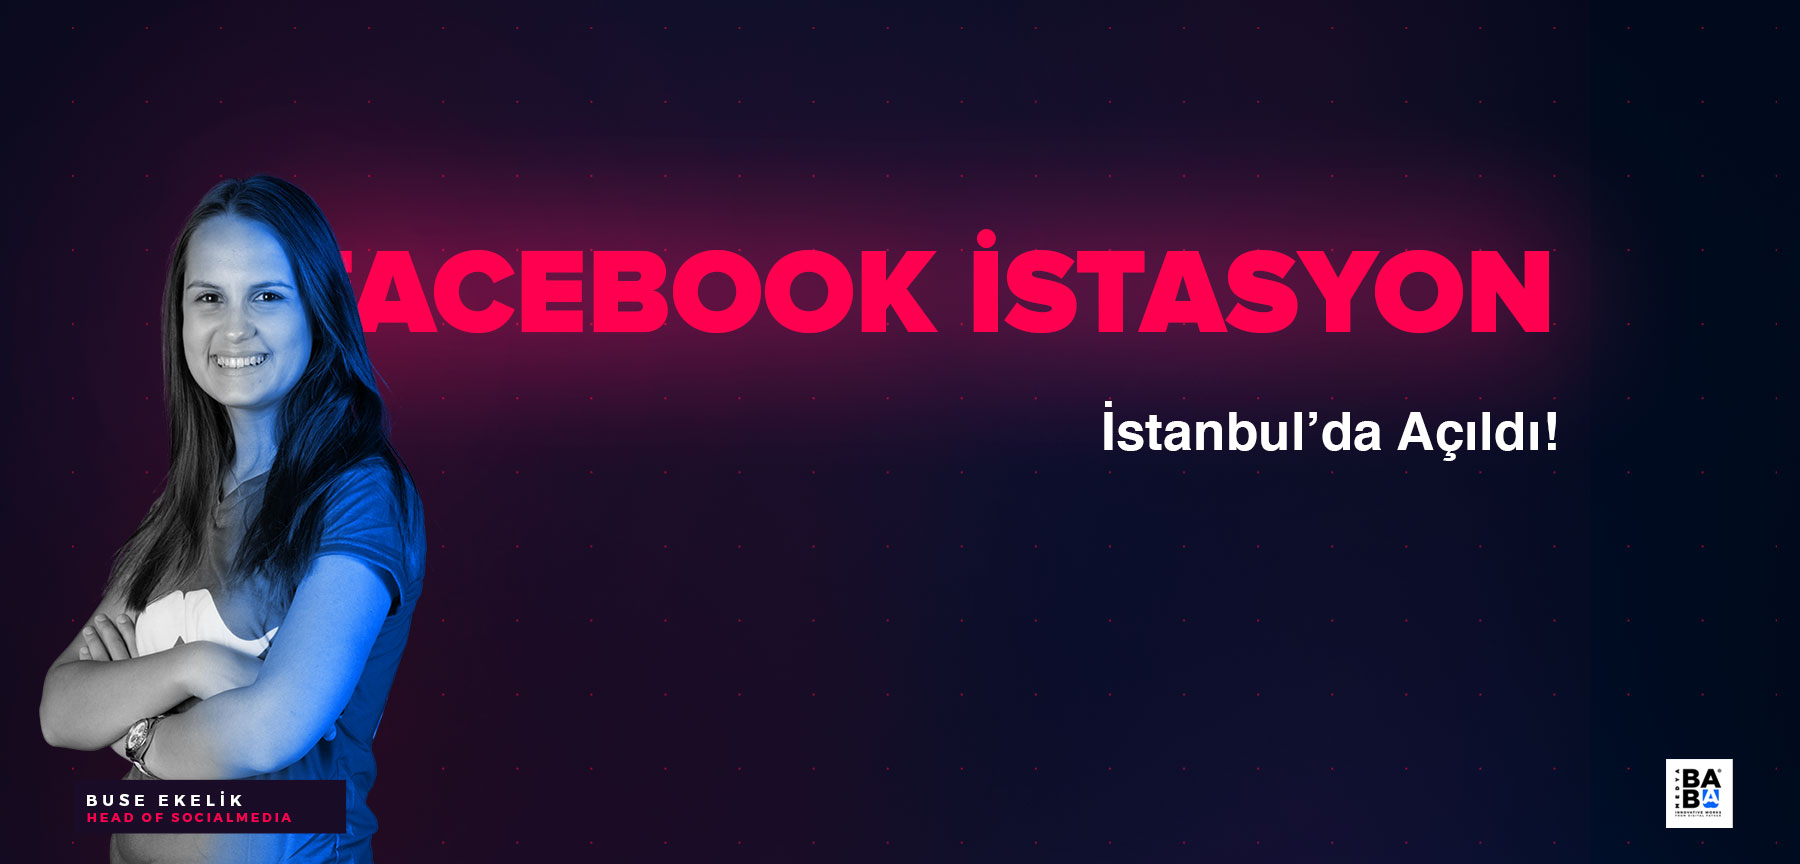 Facebook İstasyon İstanbul'da açıldı!